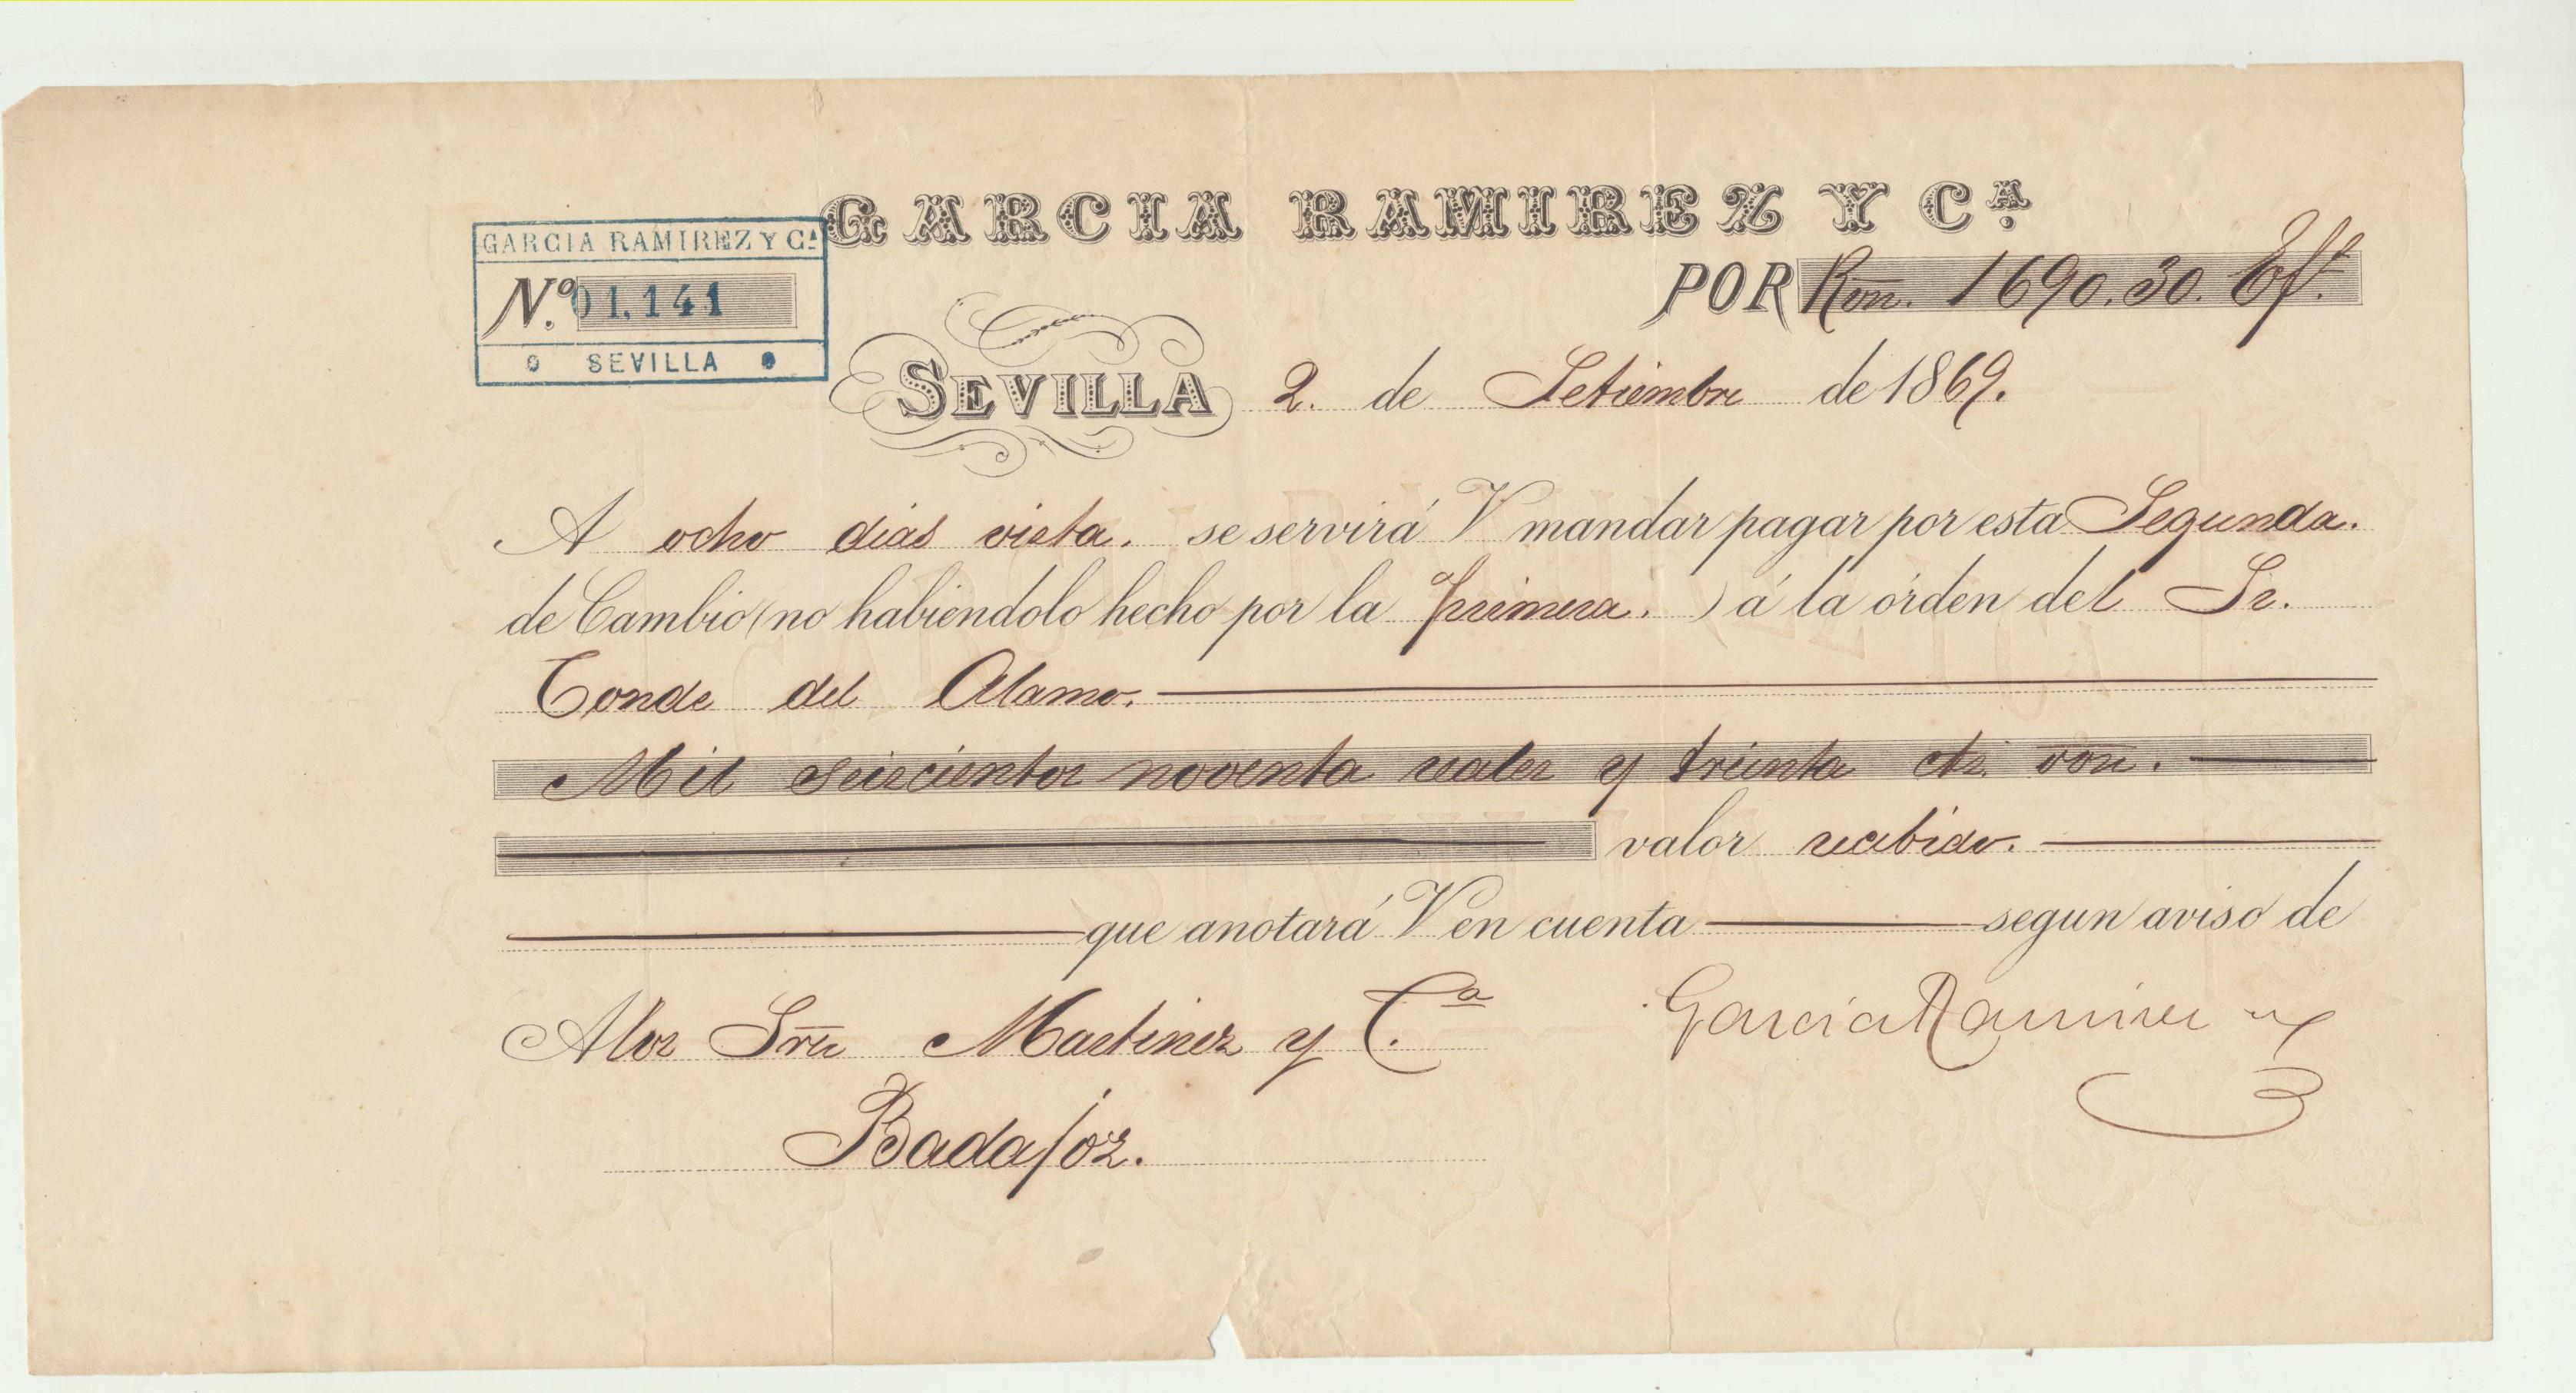 Carta con Membrete por 1690 Reales y 30 cts. Sevilla 2 Setiembre 1869. pagadera en Badajoz